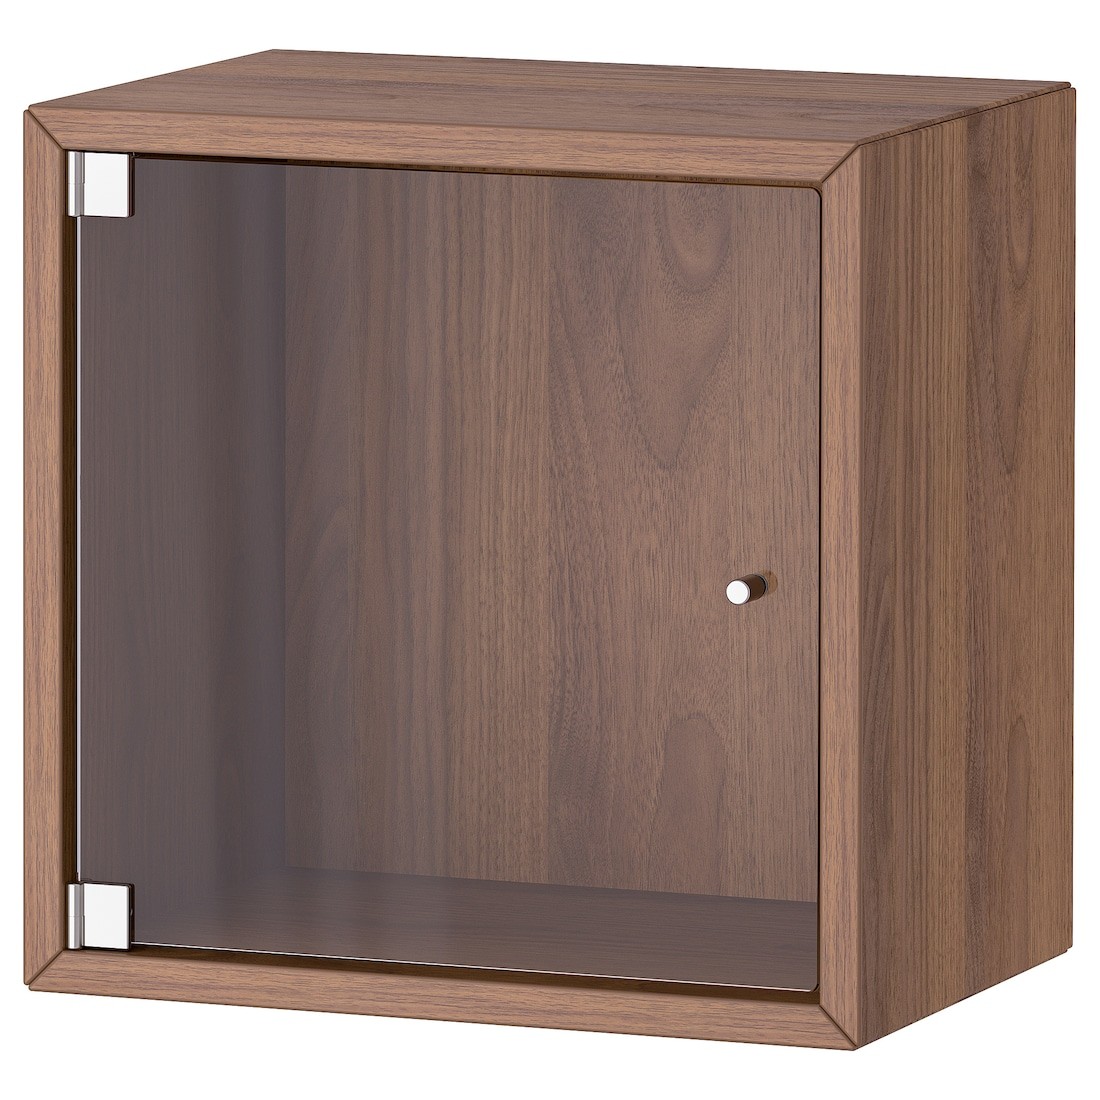 EKET Навесной шкаф со стеклянной дверью, коричневый орех, 35x25x35 см